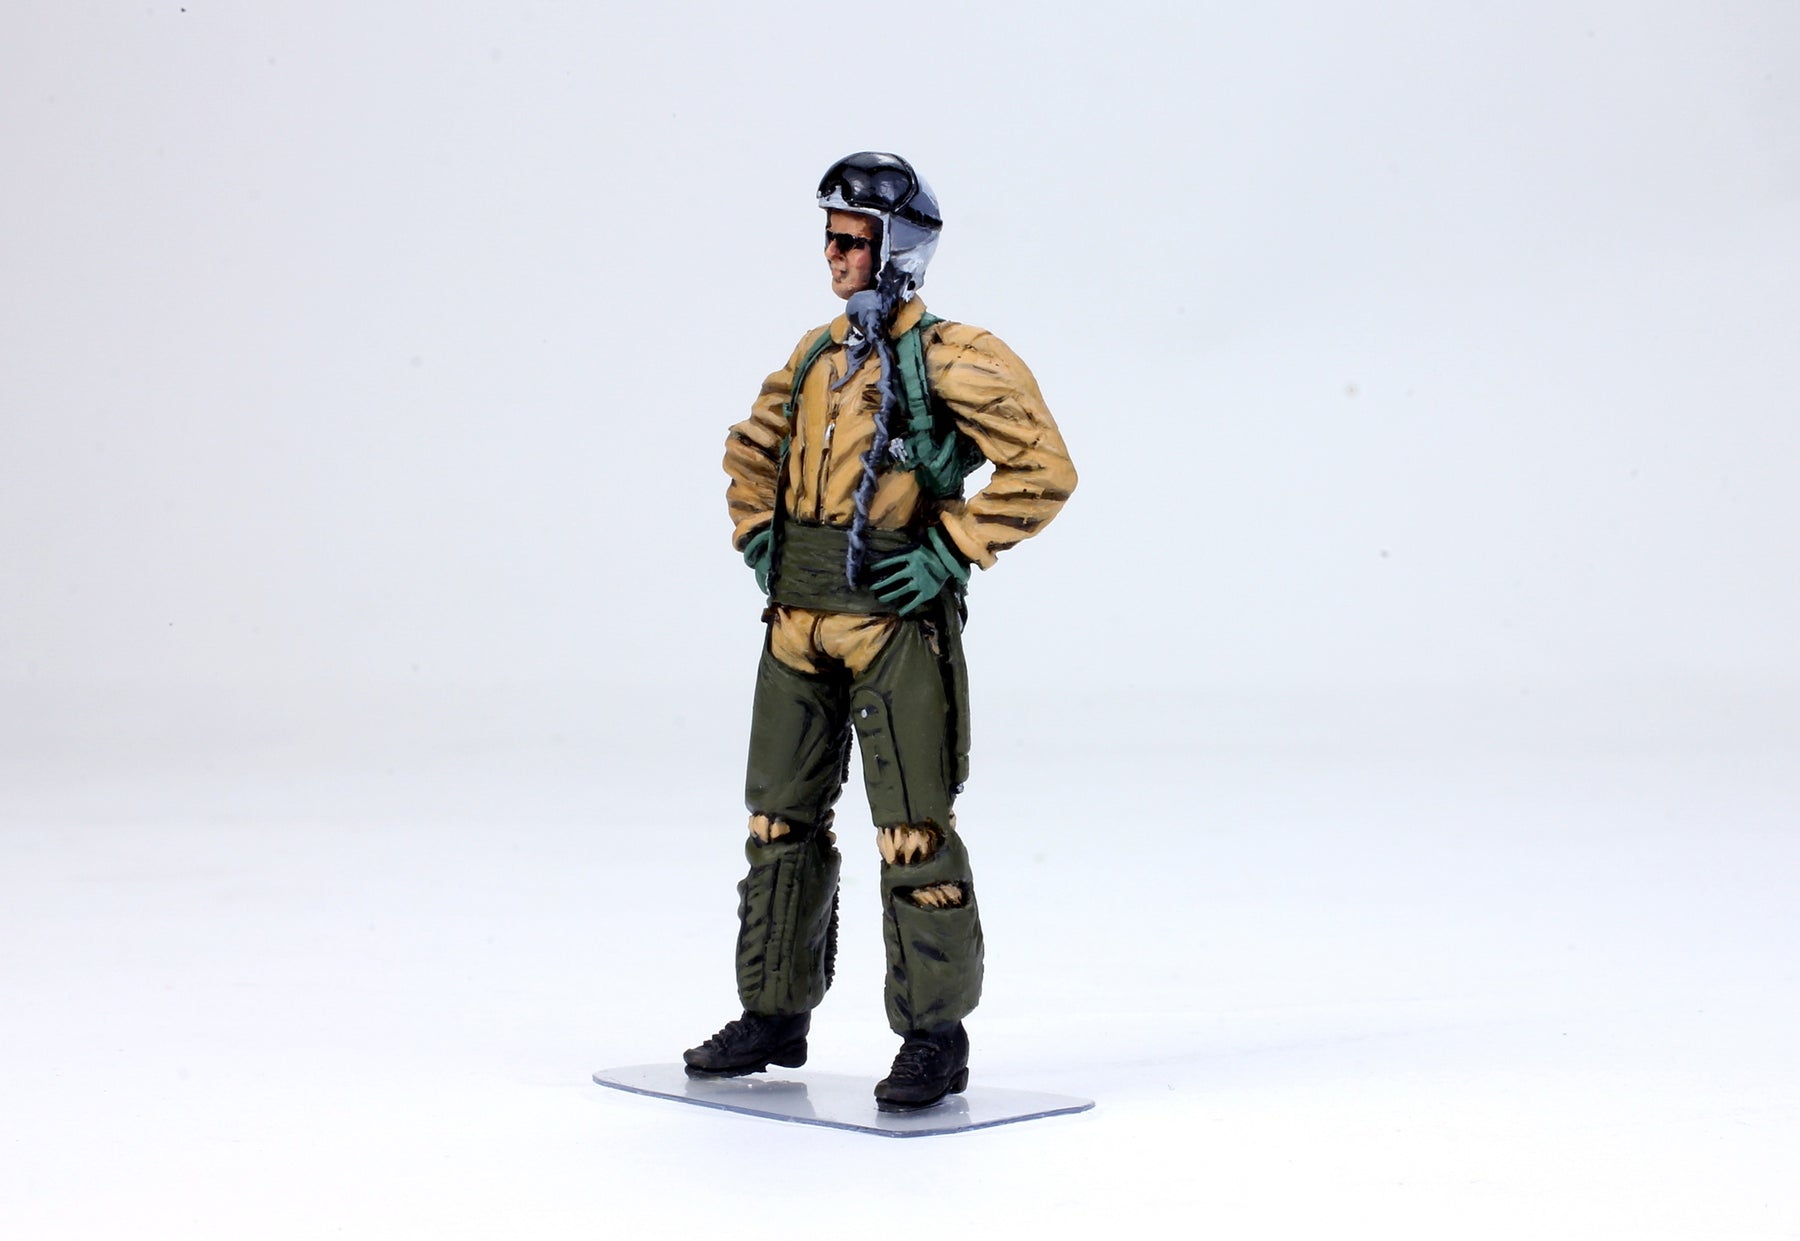 usaf fighter pilot uniform